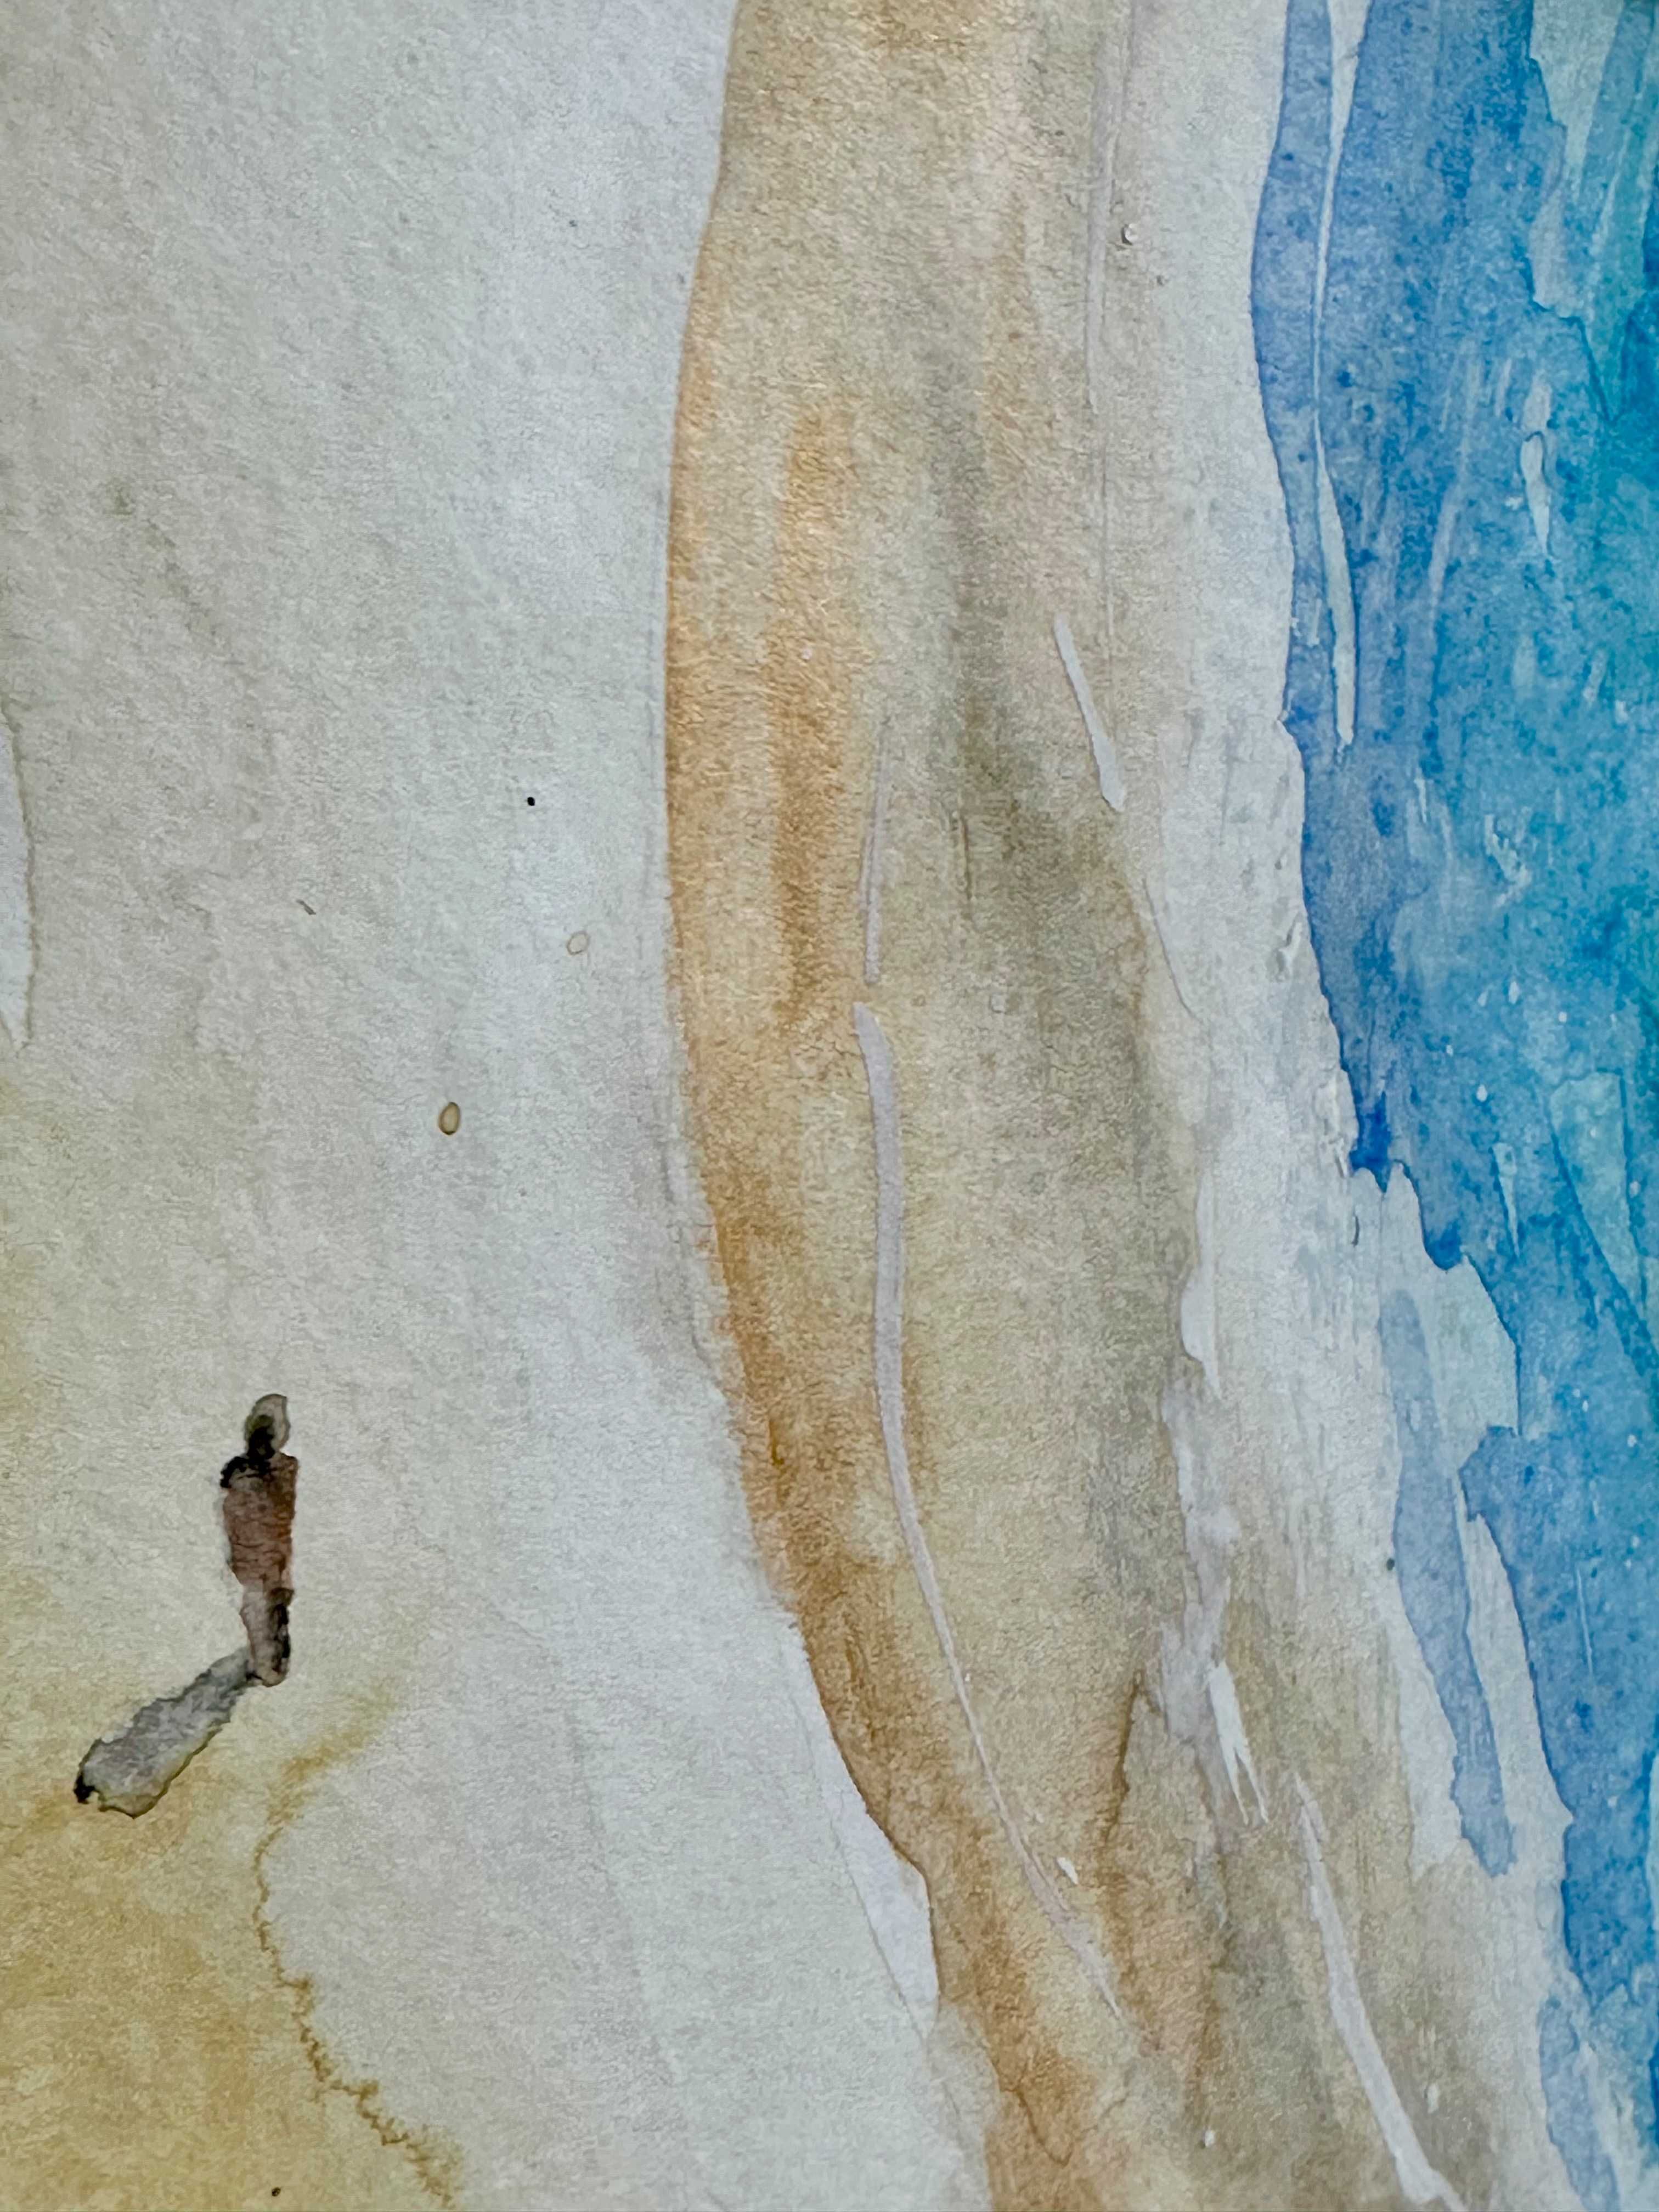 Horas na praia dourada - Pintura a aguarela sobre papel, emoldurada